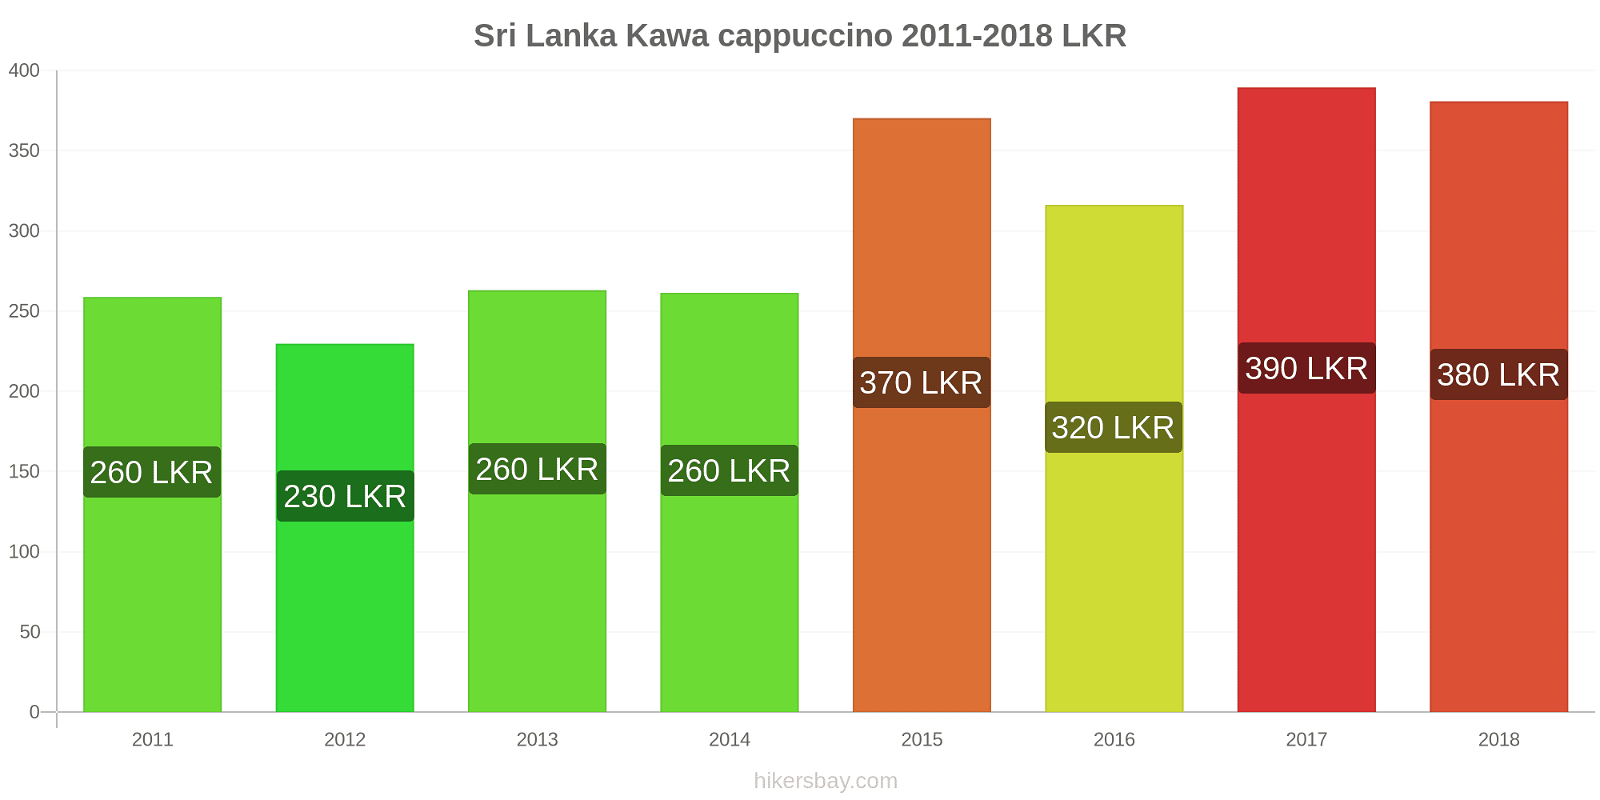 Sri Lanka zmiany cen Kawa cappuccino hikersbay.com